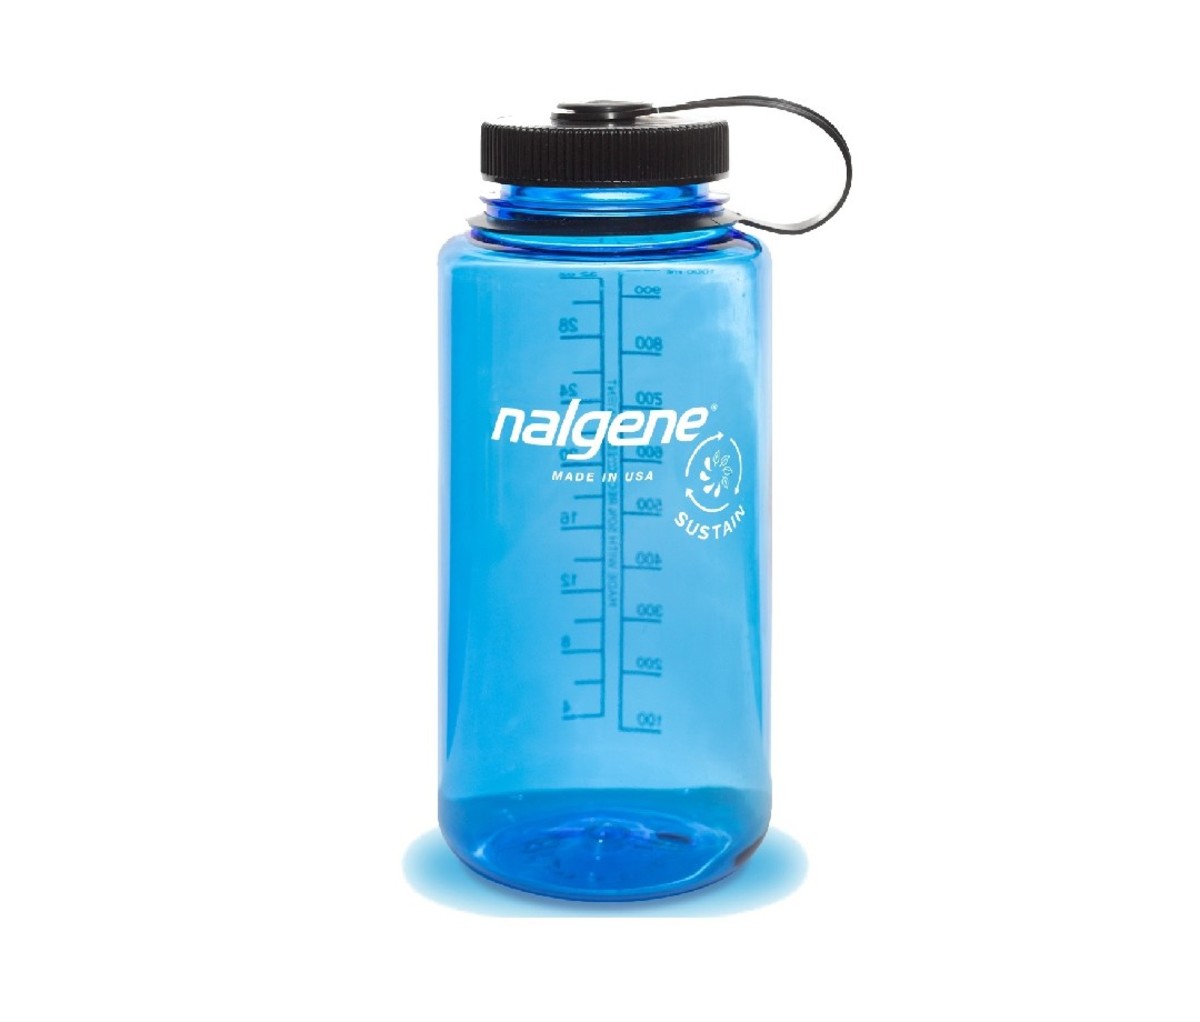 Nalgene Sustain wide mouth water bottle